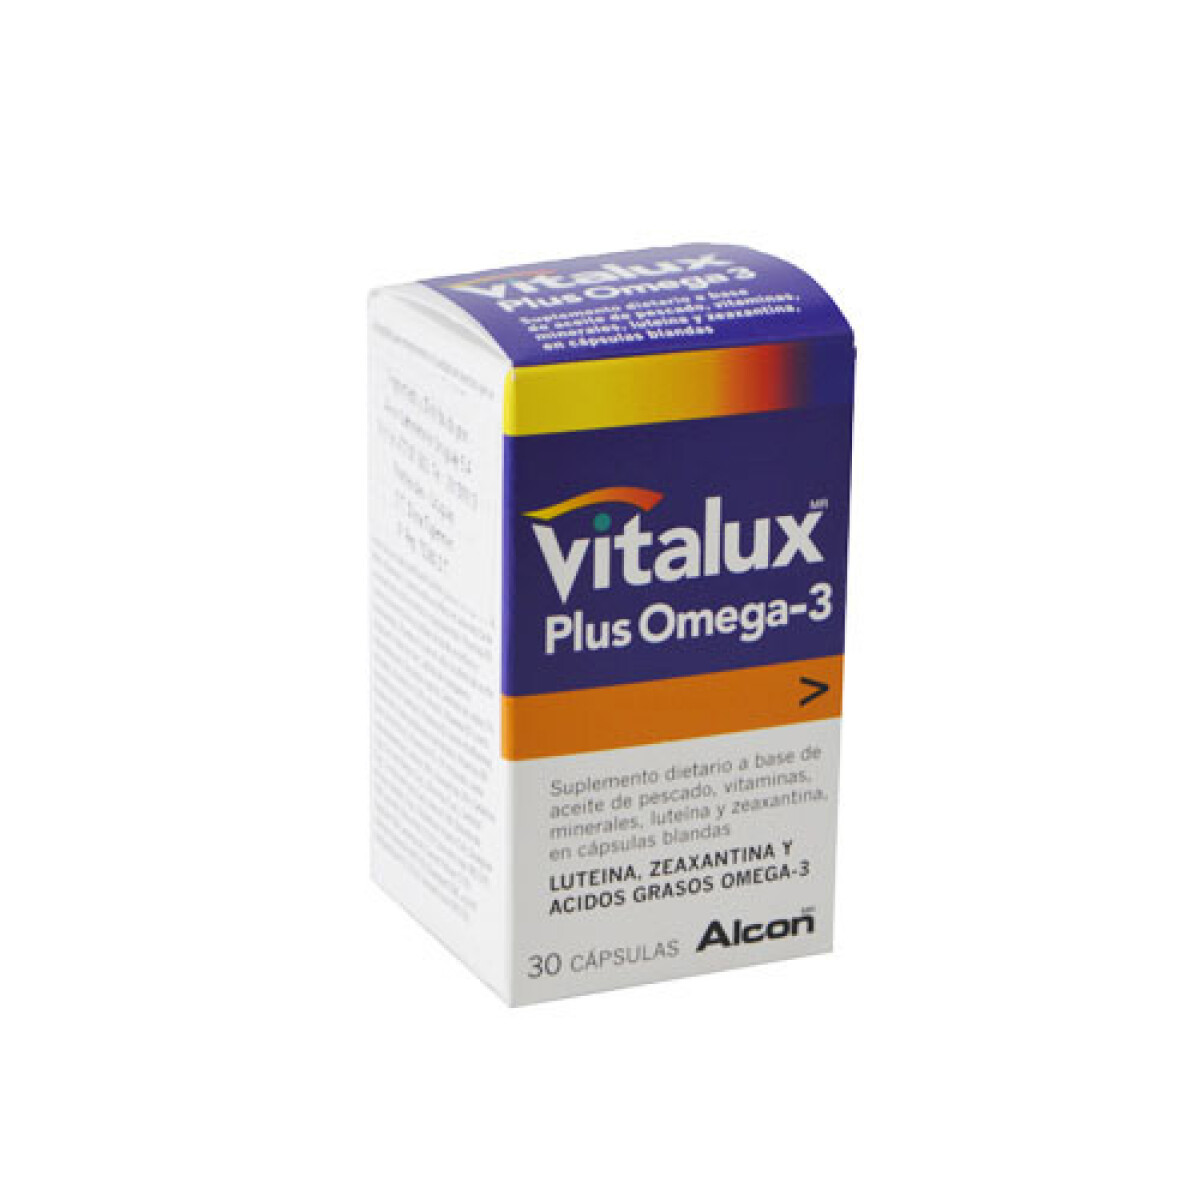 Vitalux Plus Omega 3 x 30 CAP 